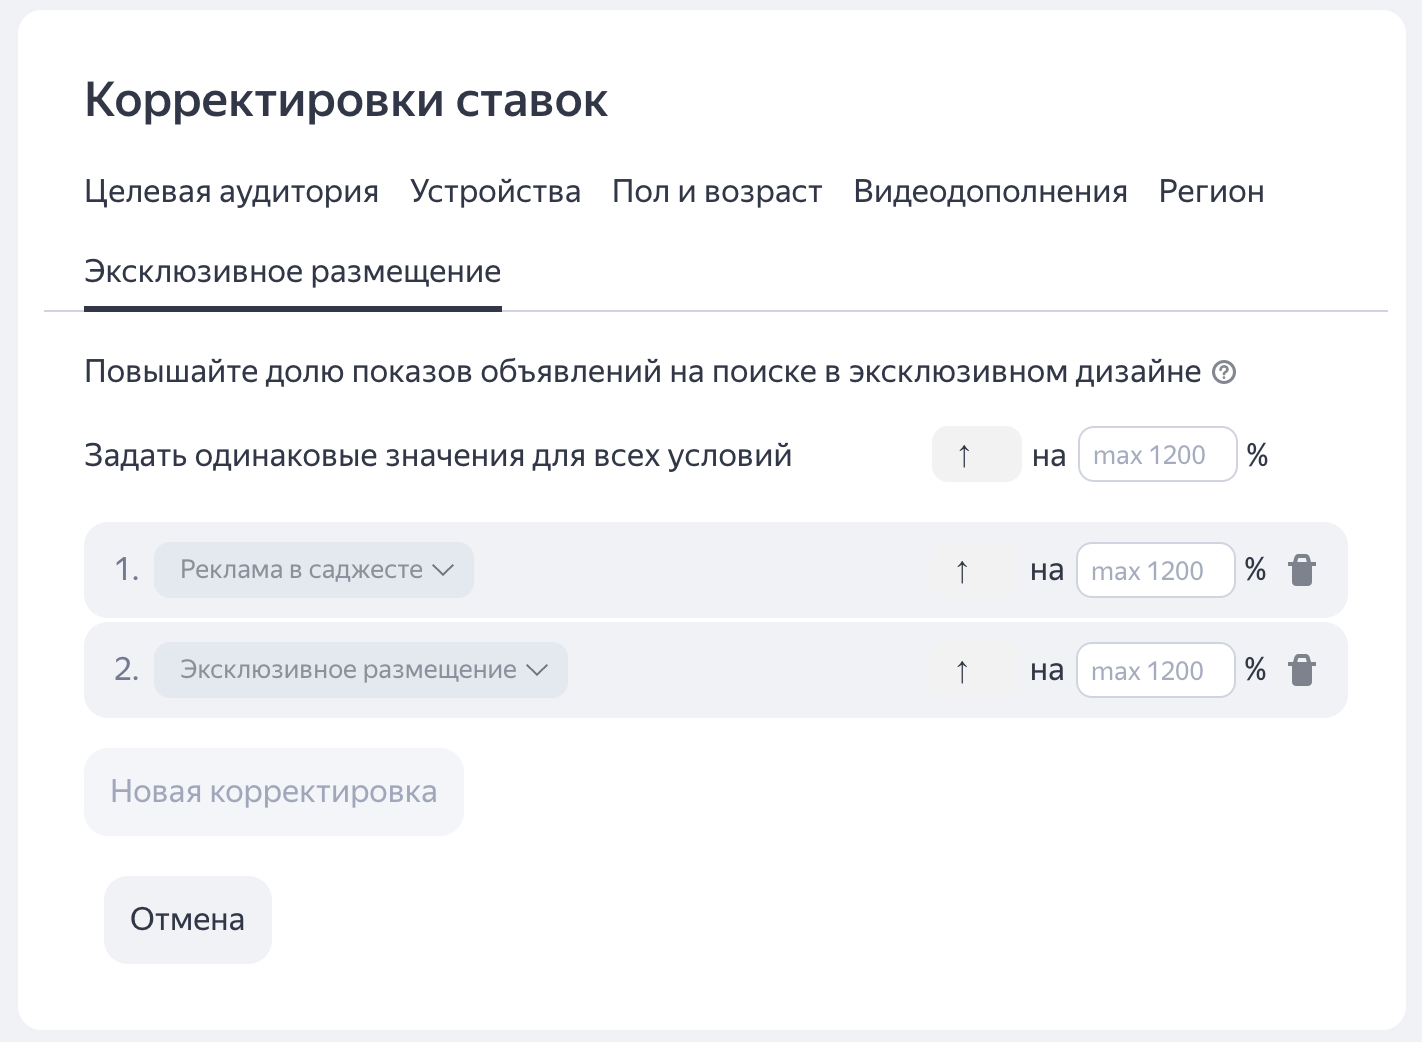 Яндекс.Директ позволил выставлять повышающие корректировки ставок для самых заметных объявлений